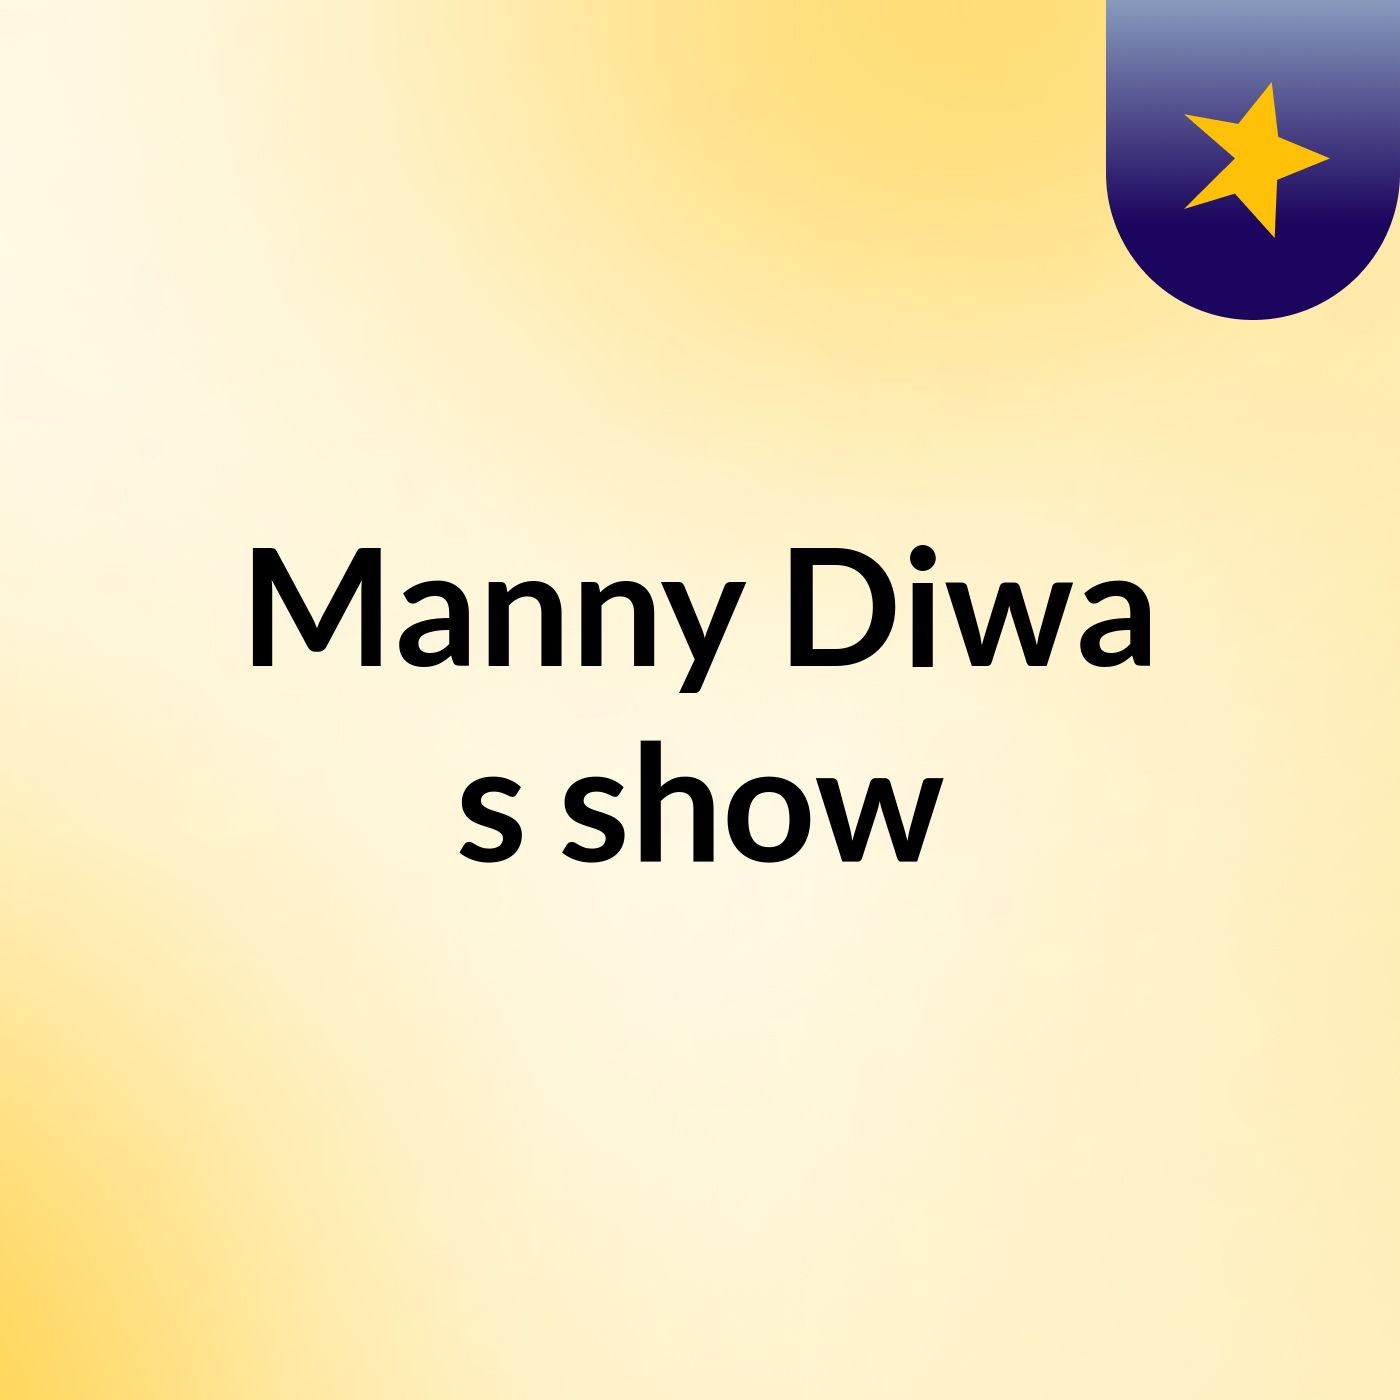 Manny Diwa's show